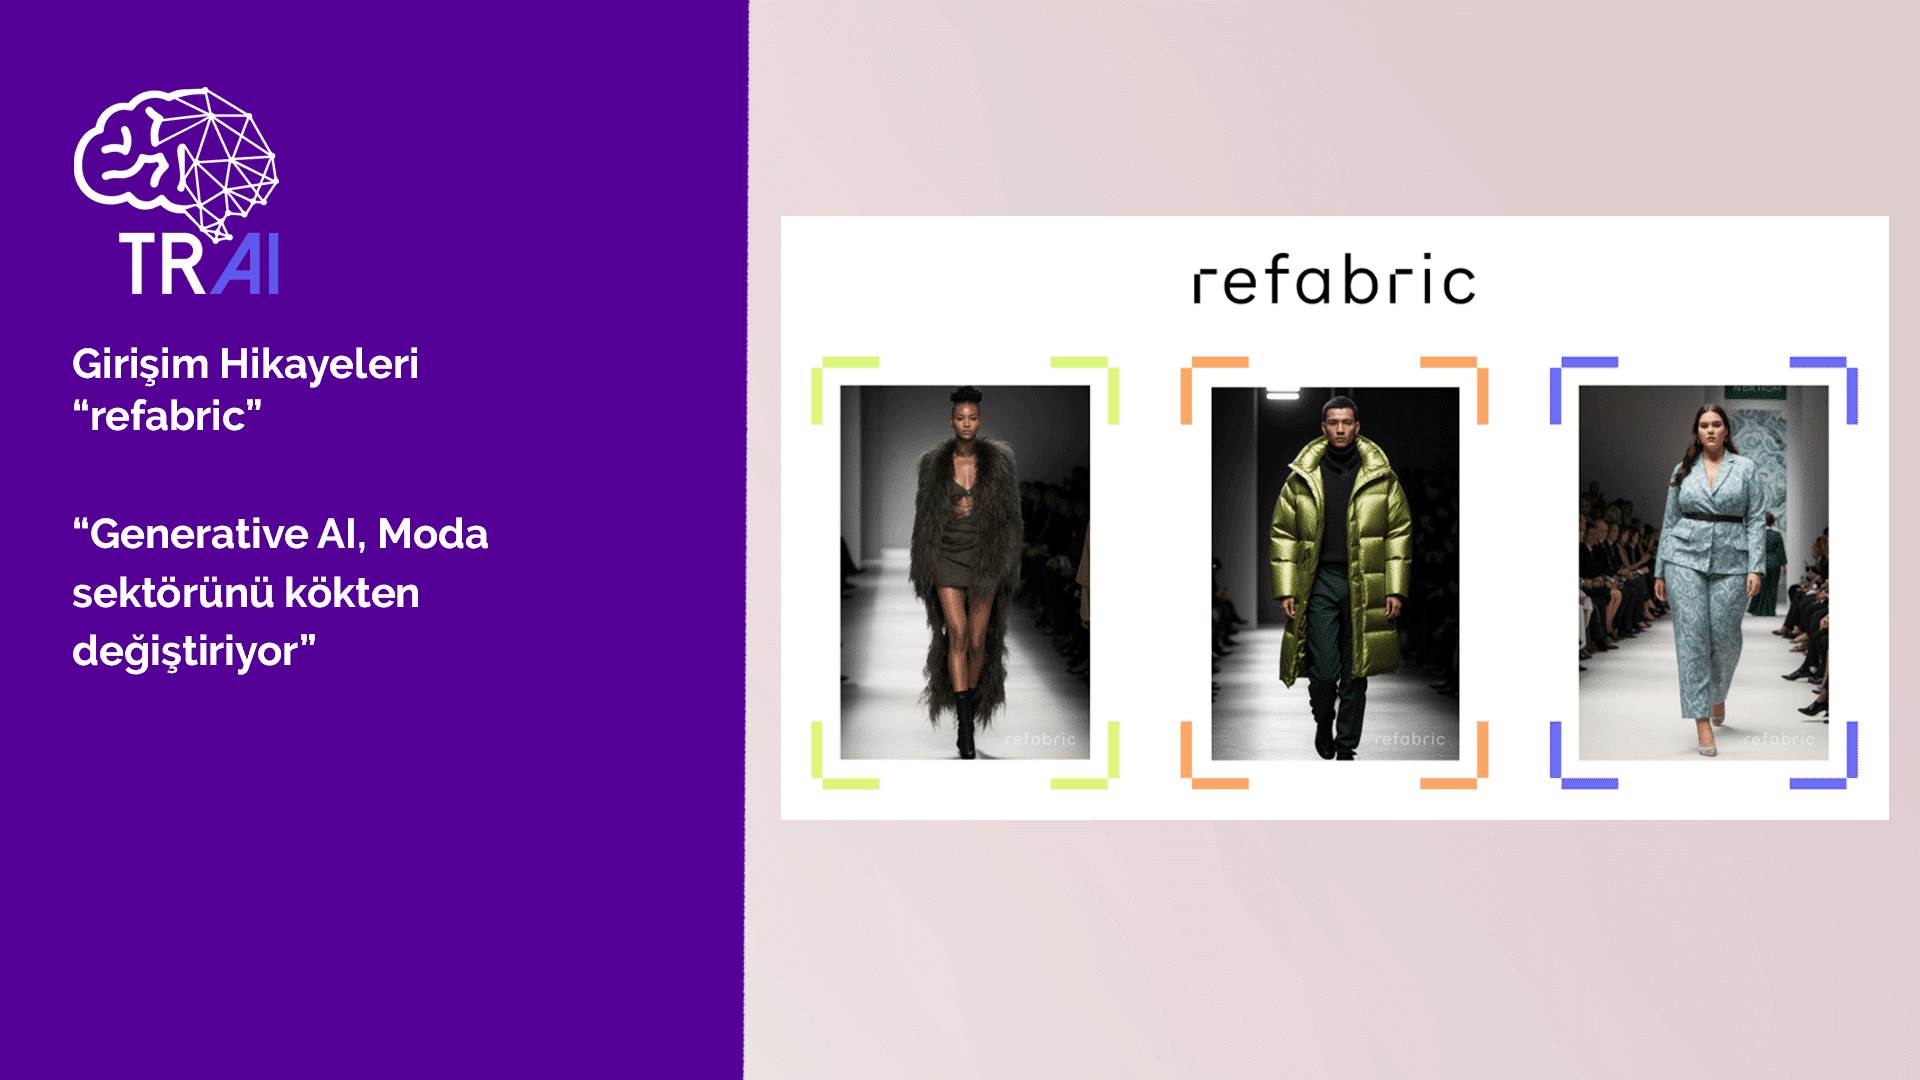 Generative AI, Moda sektörünü kökten değiştiriyor; Refabric bu değişime yenilikçi ve öncü çözümler sunuyor.